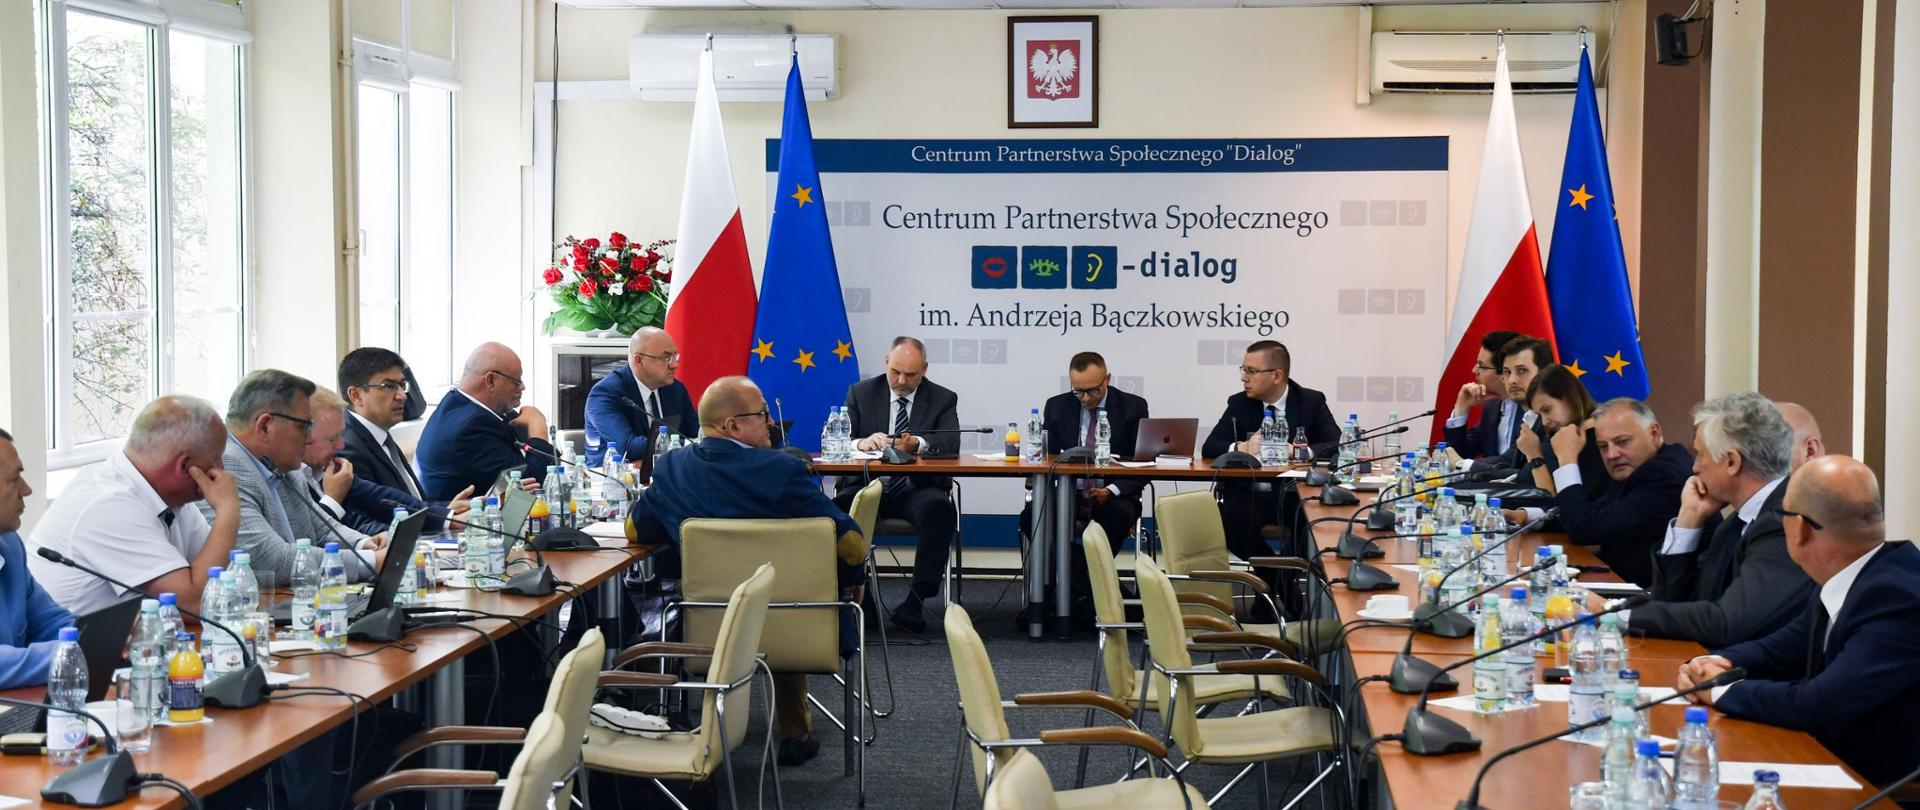 Sala konferencyjna. Przy długich stołach siedzą uczestnicy rozmów. U szczytu stołu siedzi wiceminister Artur Sasin. W tle ścianka Centrum Partnerstwa Społecznego Dialog, oraz flagi polskie i unijne.